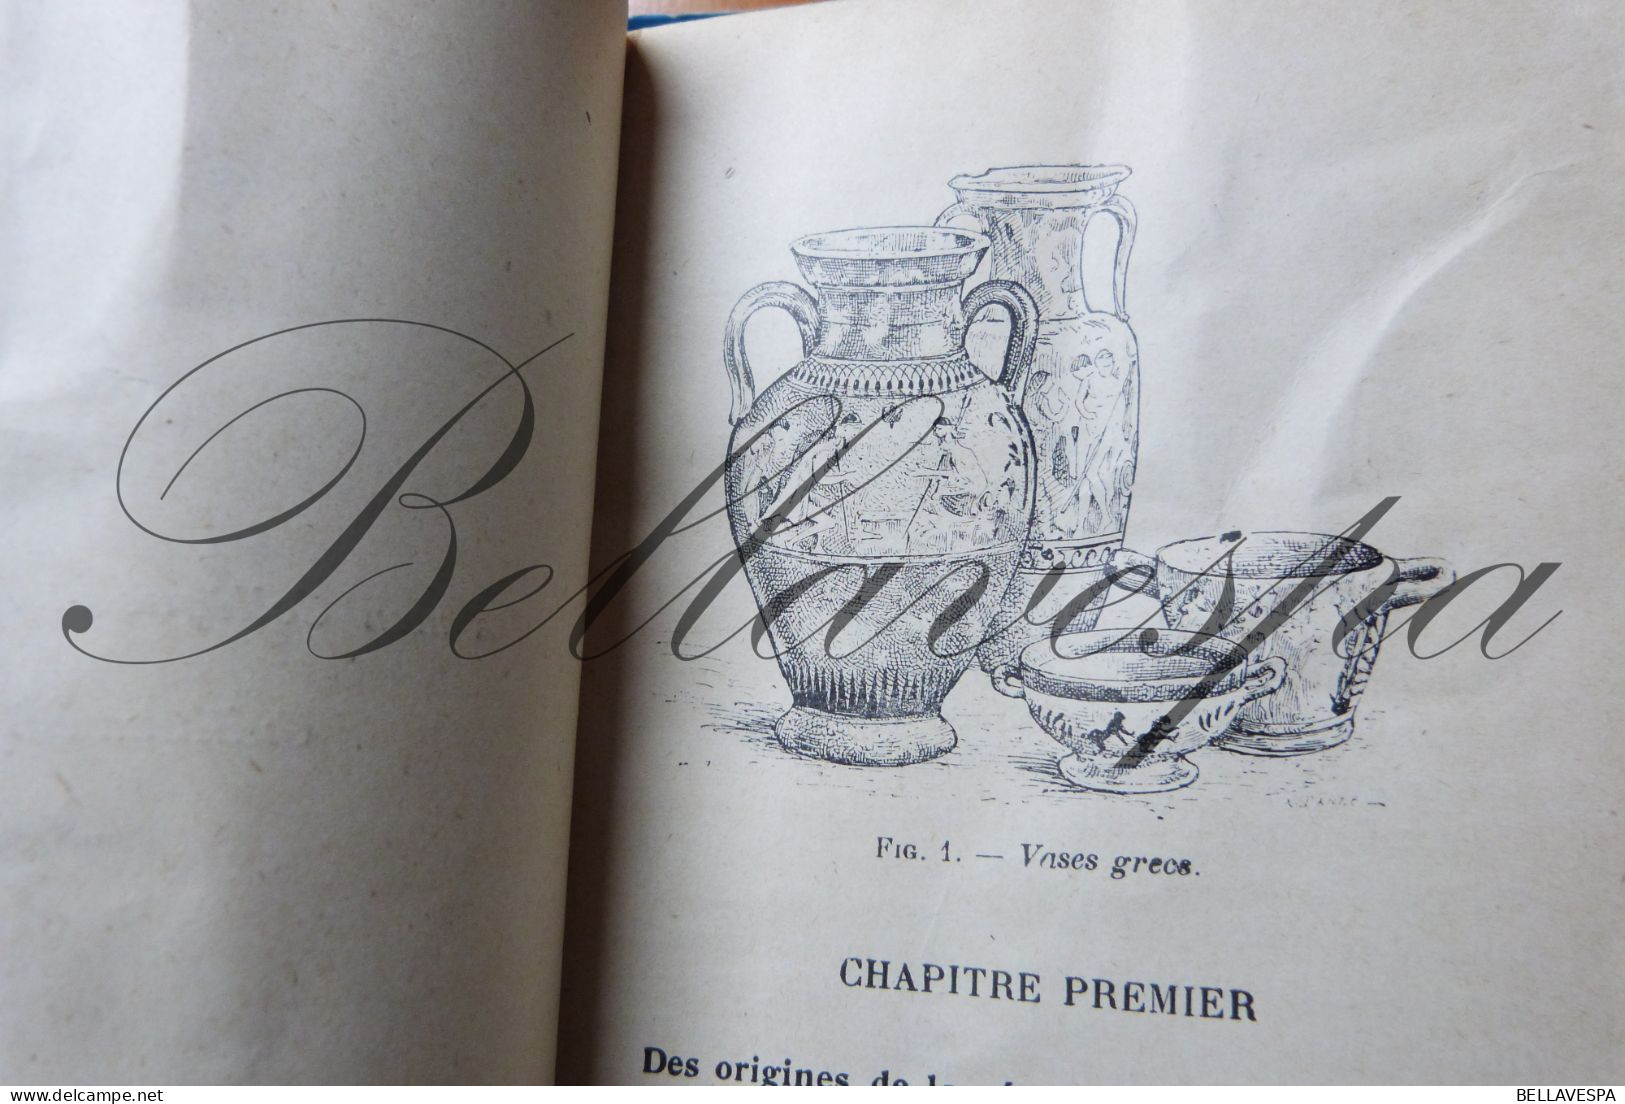 Guide l'Art la Céramique reconnaître Bayard E.1924 Majolica  faïence porcelaine grès marques monogrammes 207 gravures